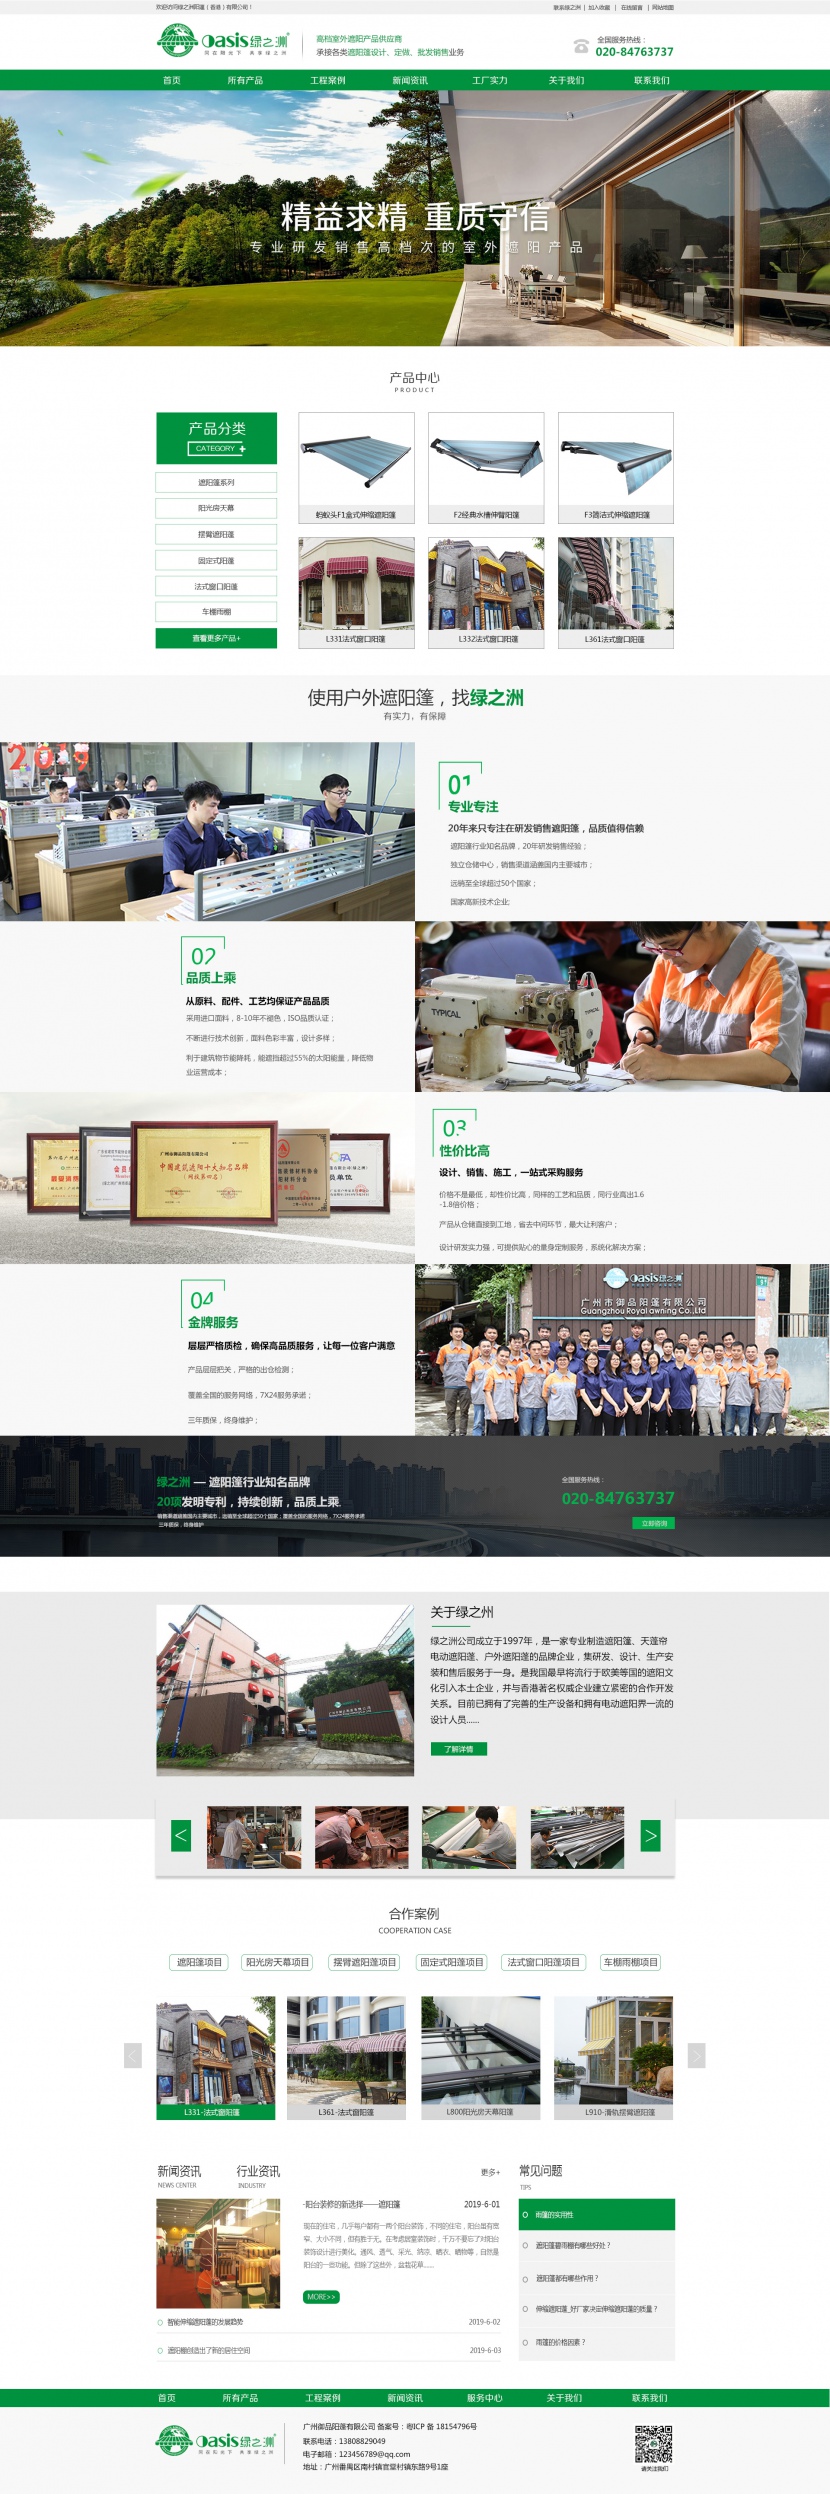 绿之洲高档室外遮阳产品企业展示官方网站